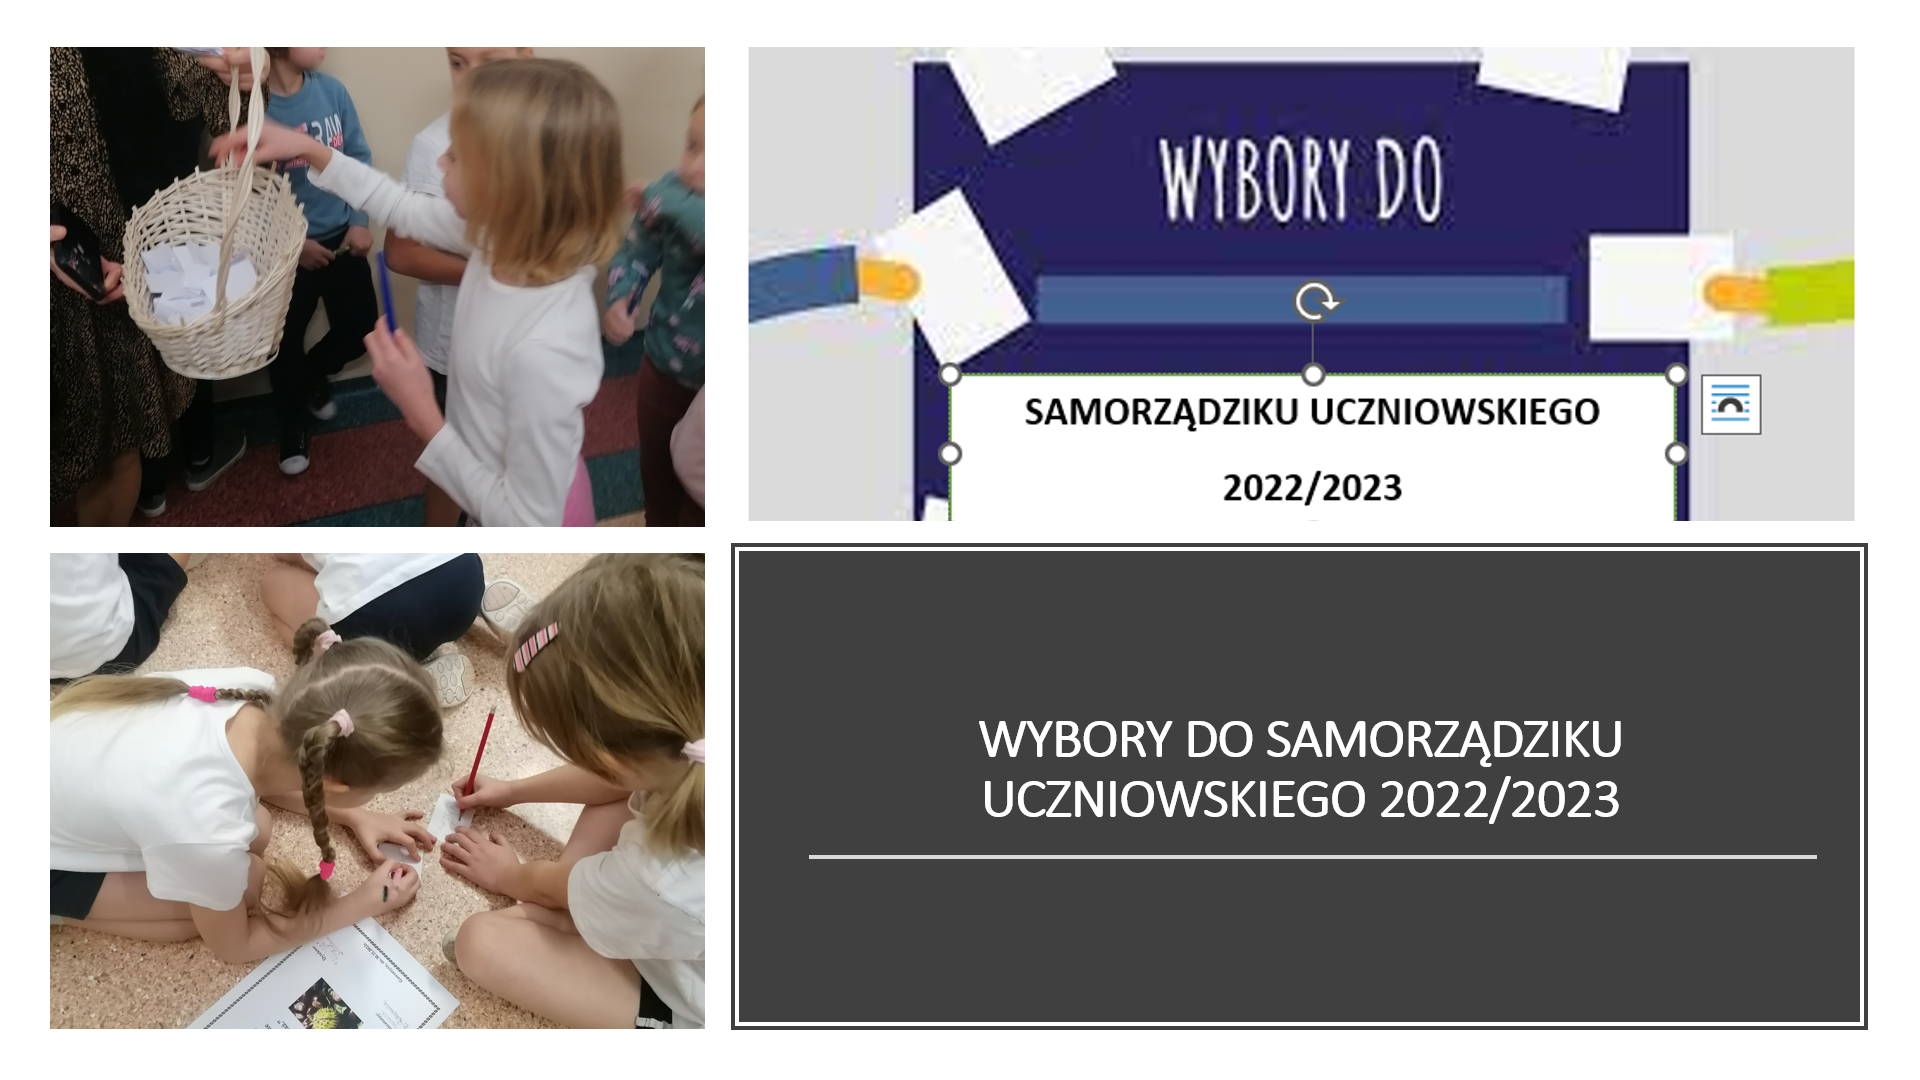 Wybory do Samorzadziku Uczniowskiego- uczniowie klas 1-3 wybieraja swoich przedstawicieli do Samorzadziku Ucznioskiego.